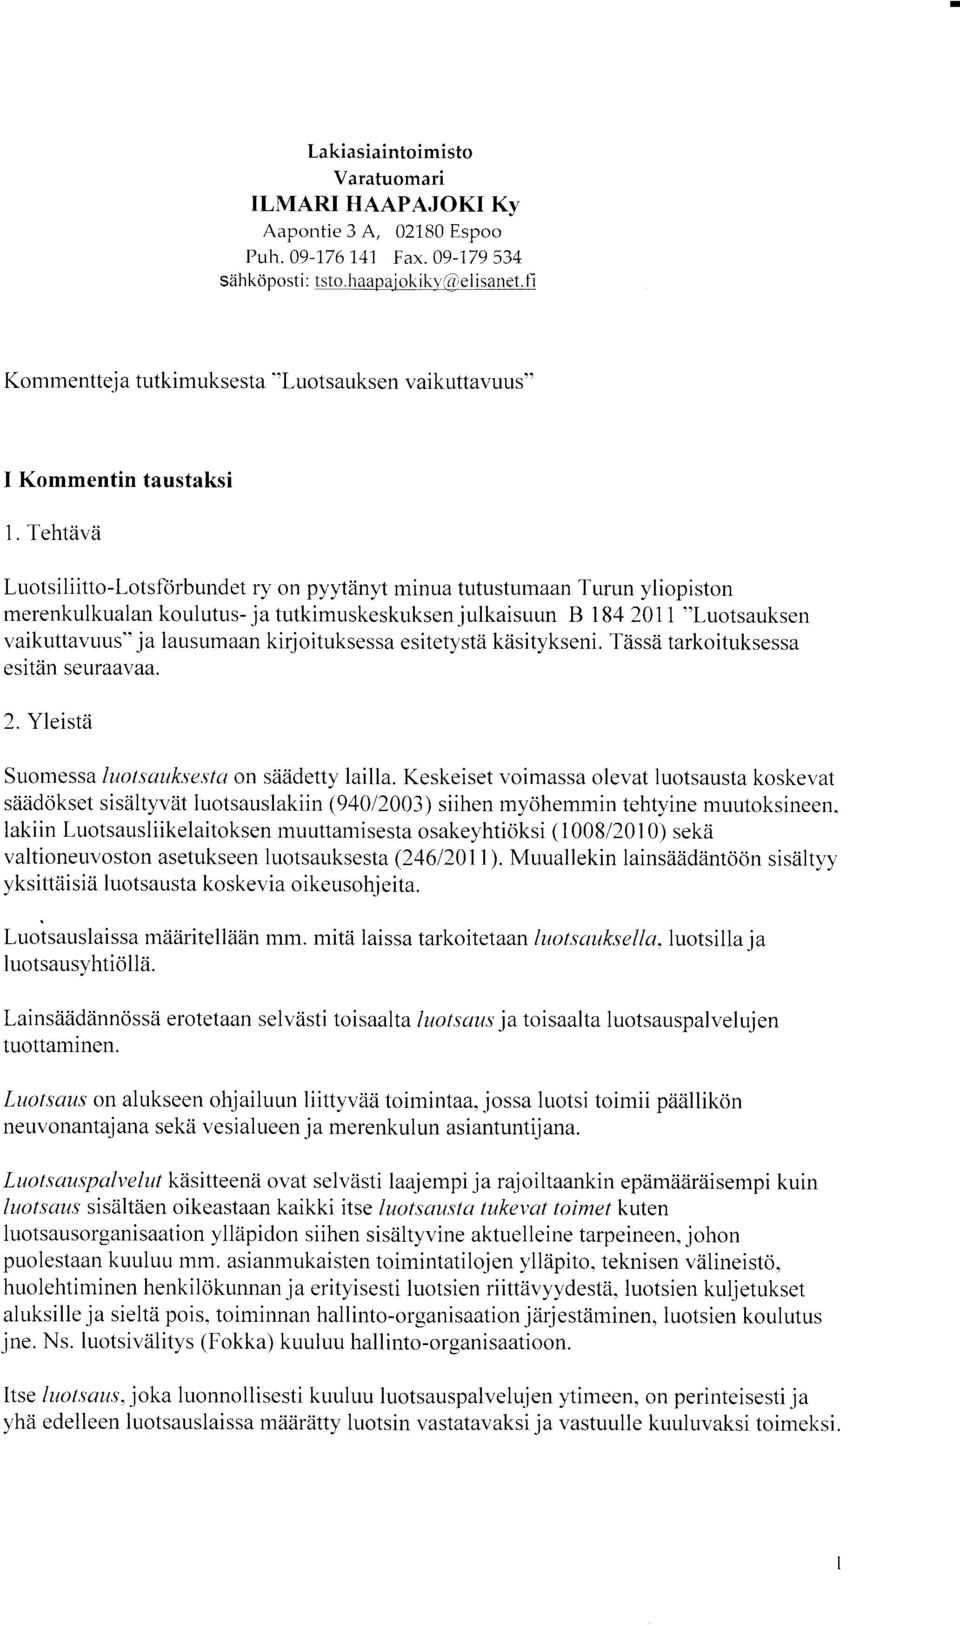 Tehtzivii Luotsiliitto-Lotsforbundet ry on pyytiinyt minua tutustumaan Turun yliopiston merenkulkualan koulutus- ja tutkimuskeskuksen julkaisuun B 184201 I "Luotsauksen vaikuttavuus" ja lausumaan